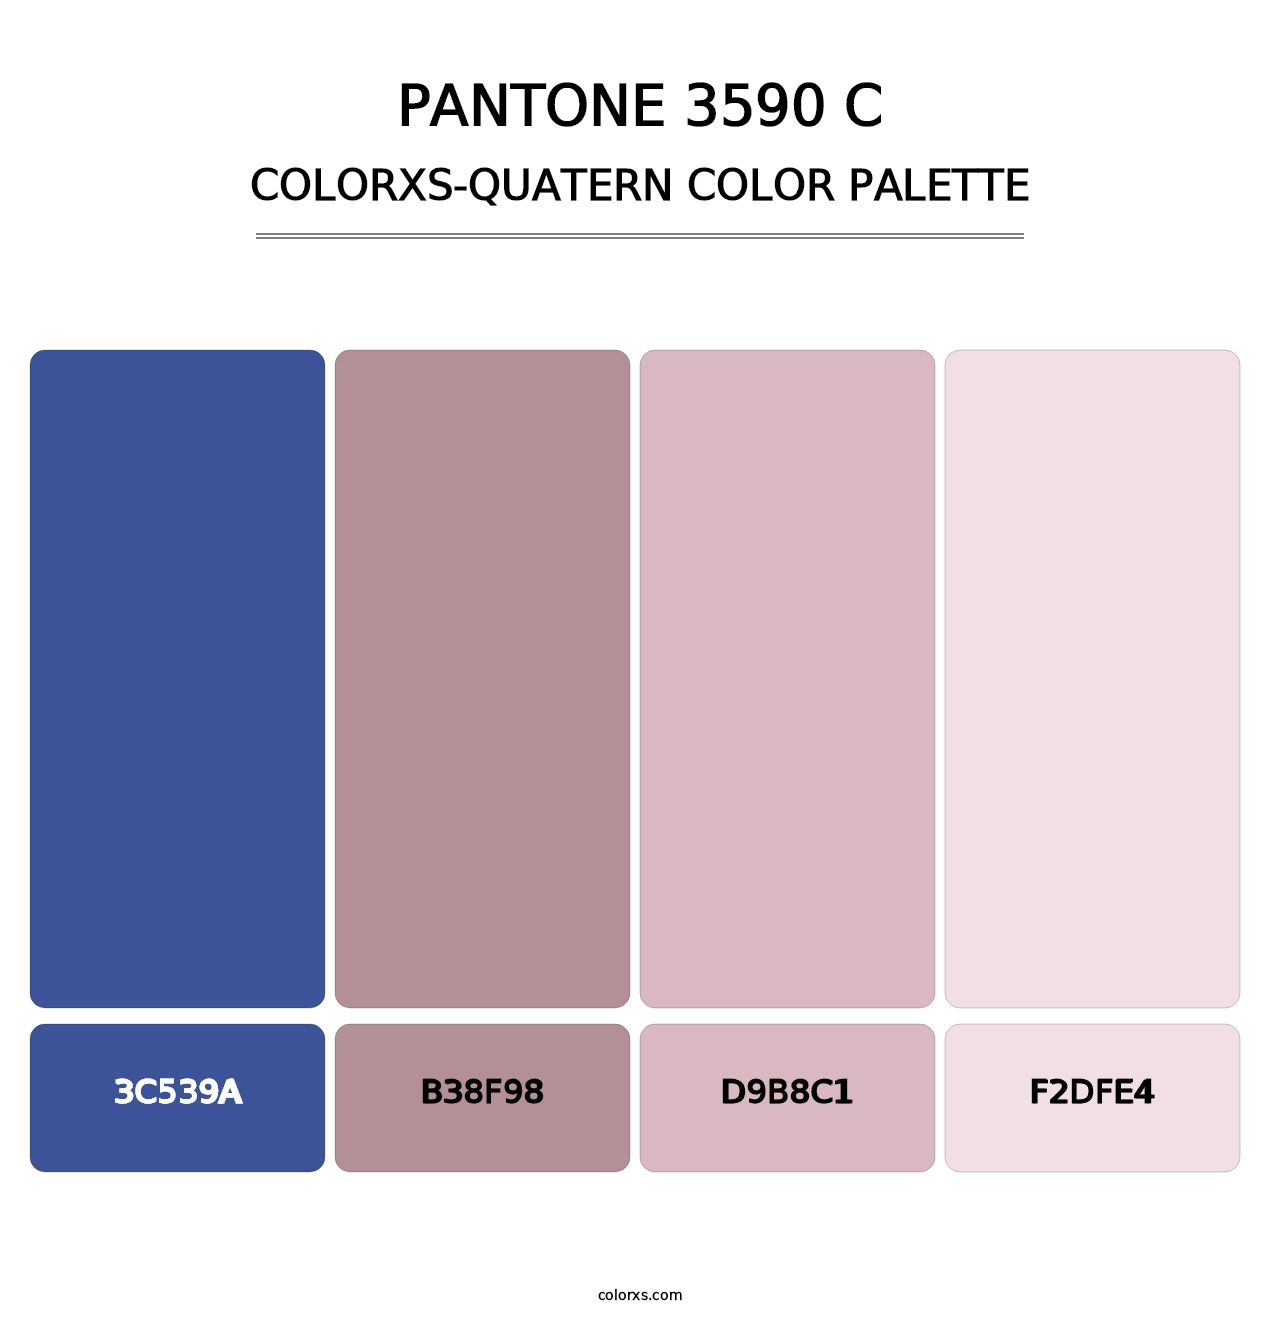 PANTONE 3590 C - Colorxs Quatern Palette